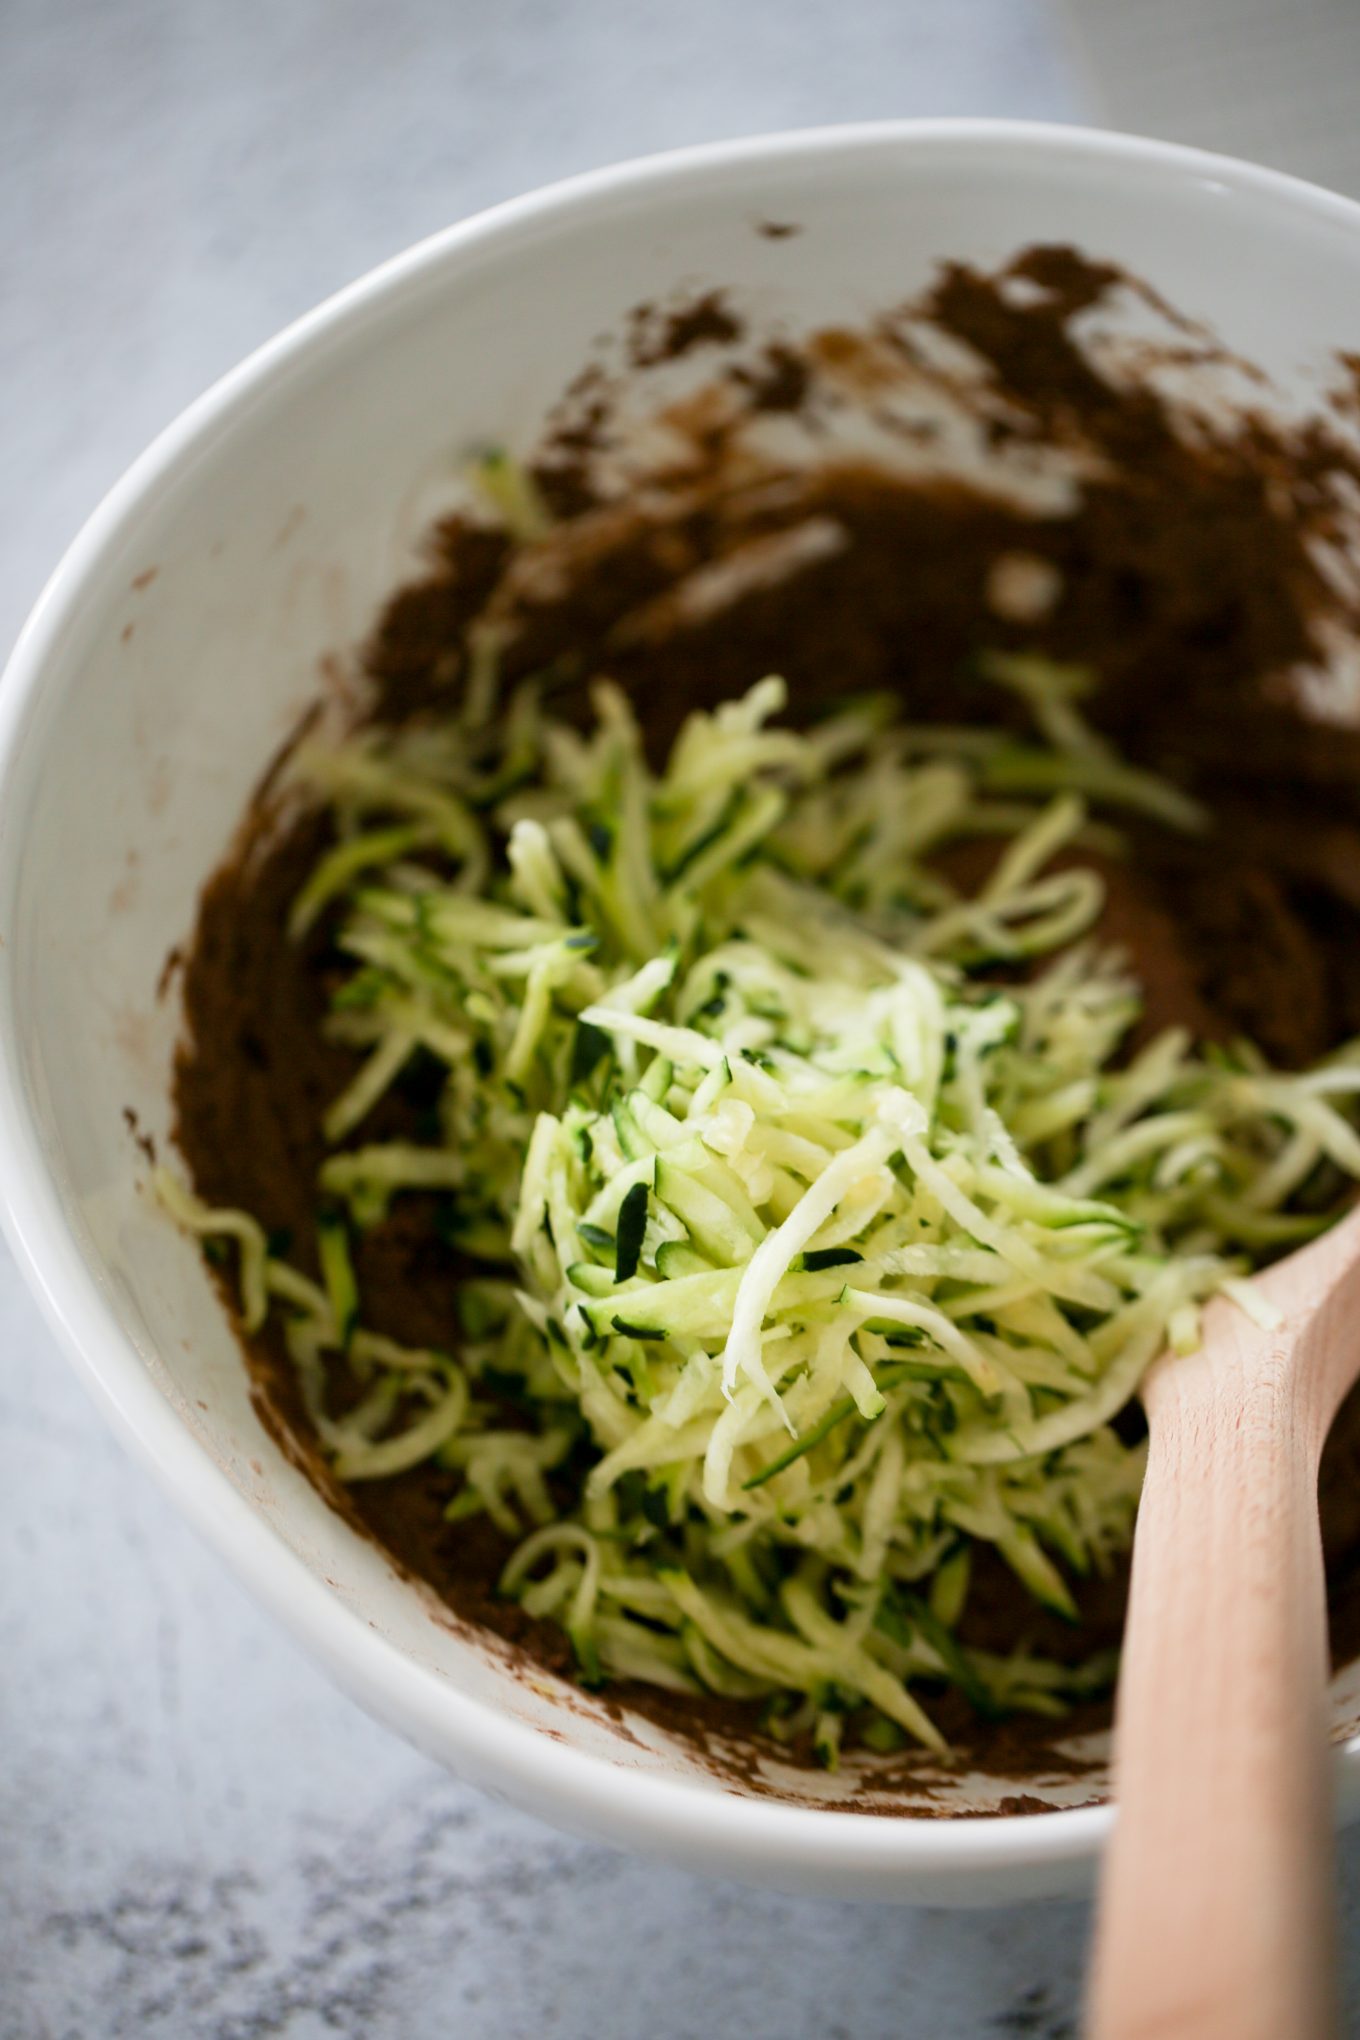 Agregando el zucchini rallado a la mezcla.